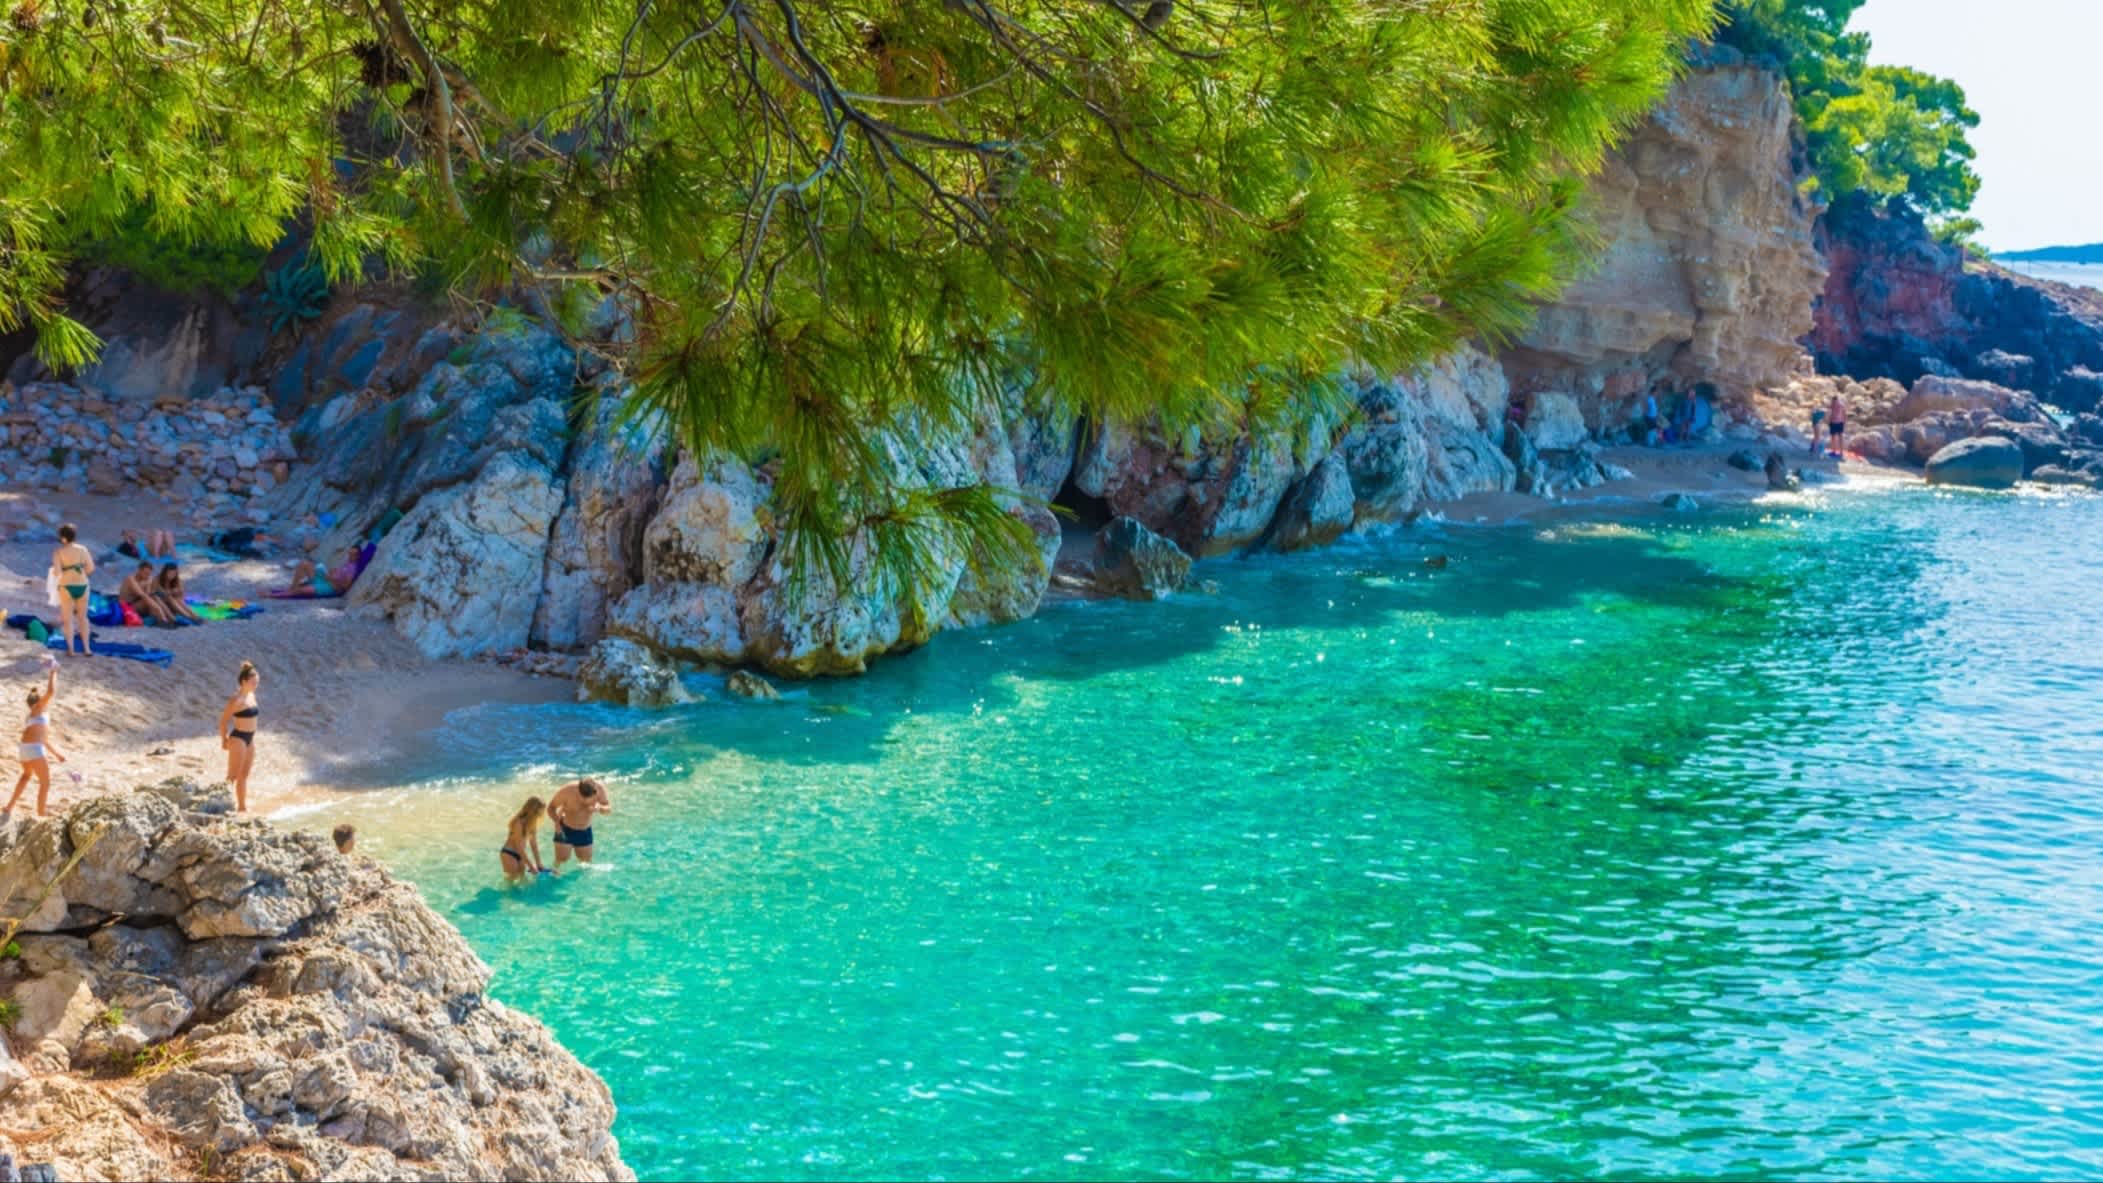 Der Jagodna Bay, Insel Hvar, Kroatien mit Blick auf das grüne klare Wasser, Felsenwände und Menschen am Strand.